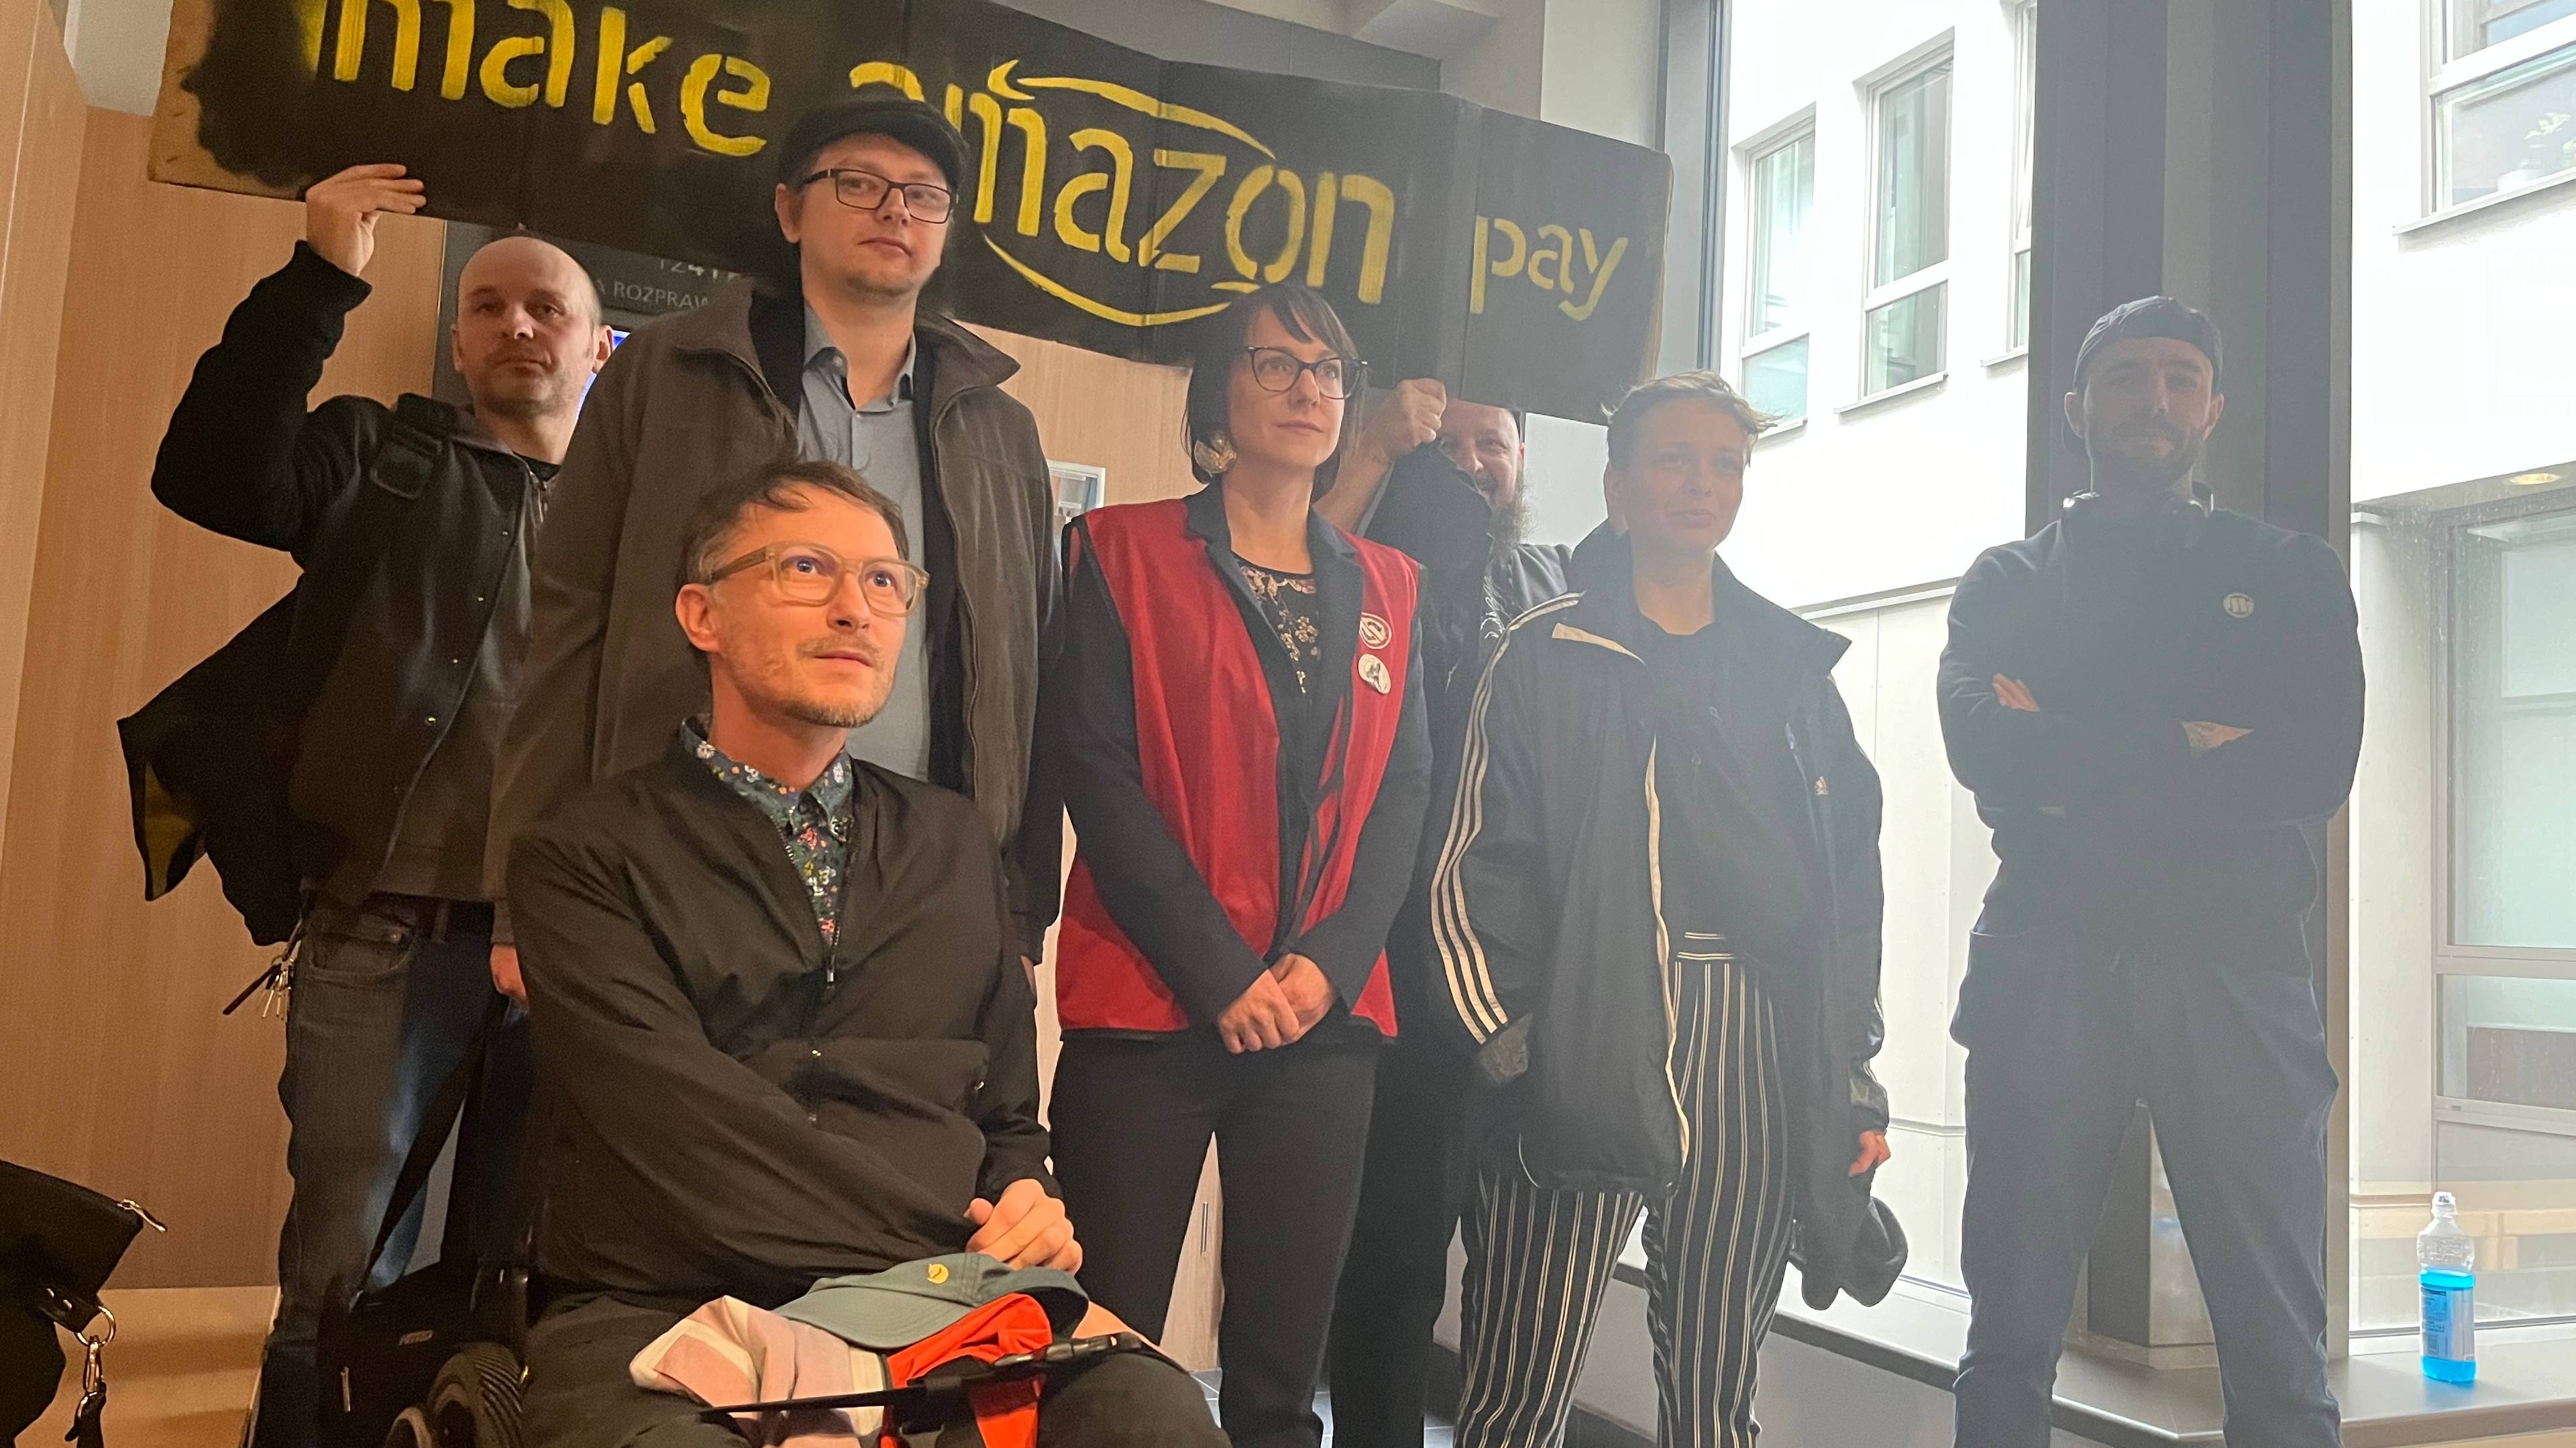 Ludzie stoją przed transparentem "Make amazon pay"